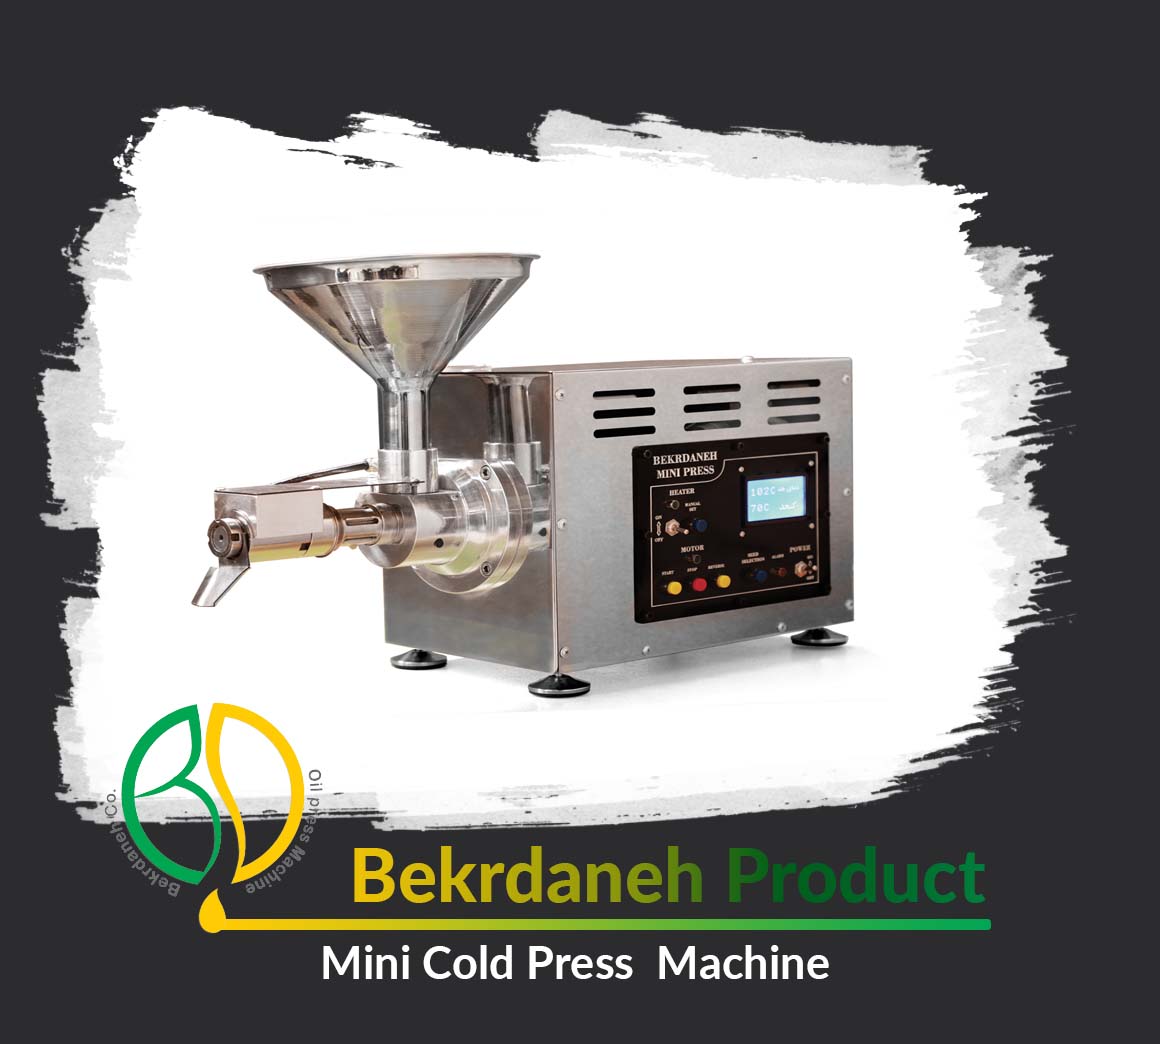 BD 25 Mini Cold Press Machine